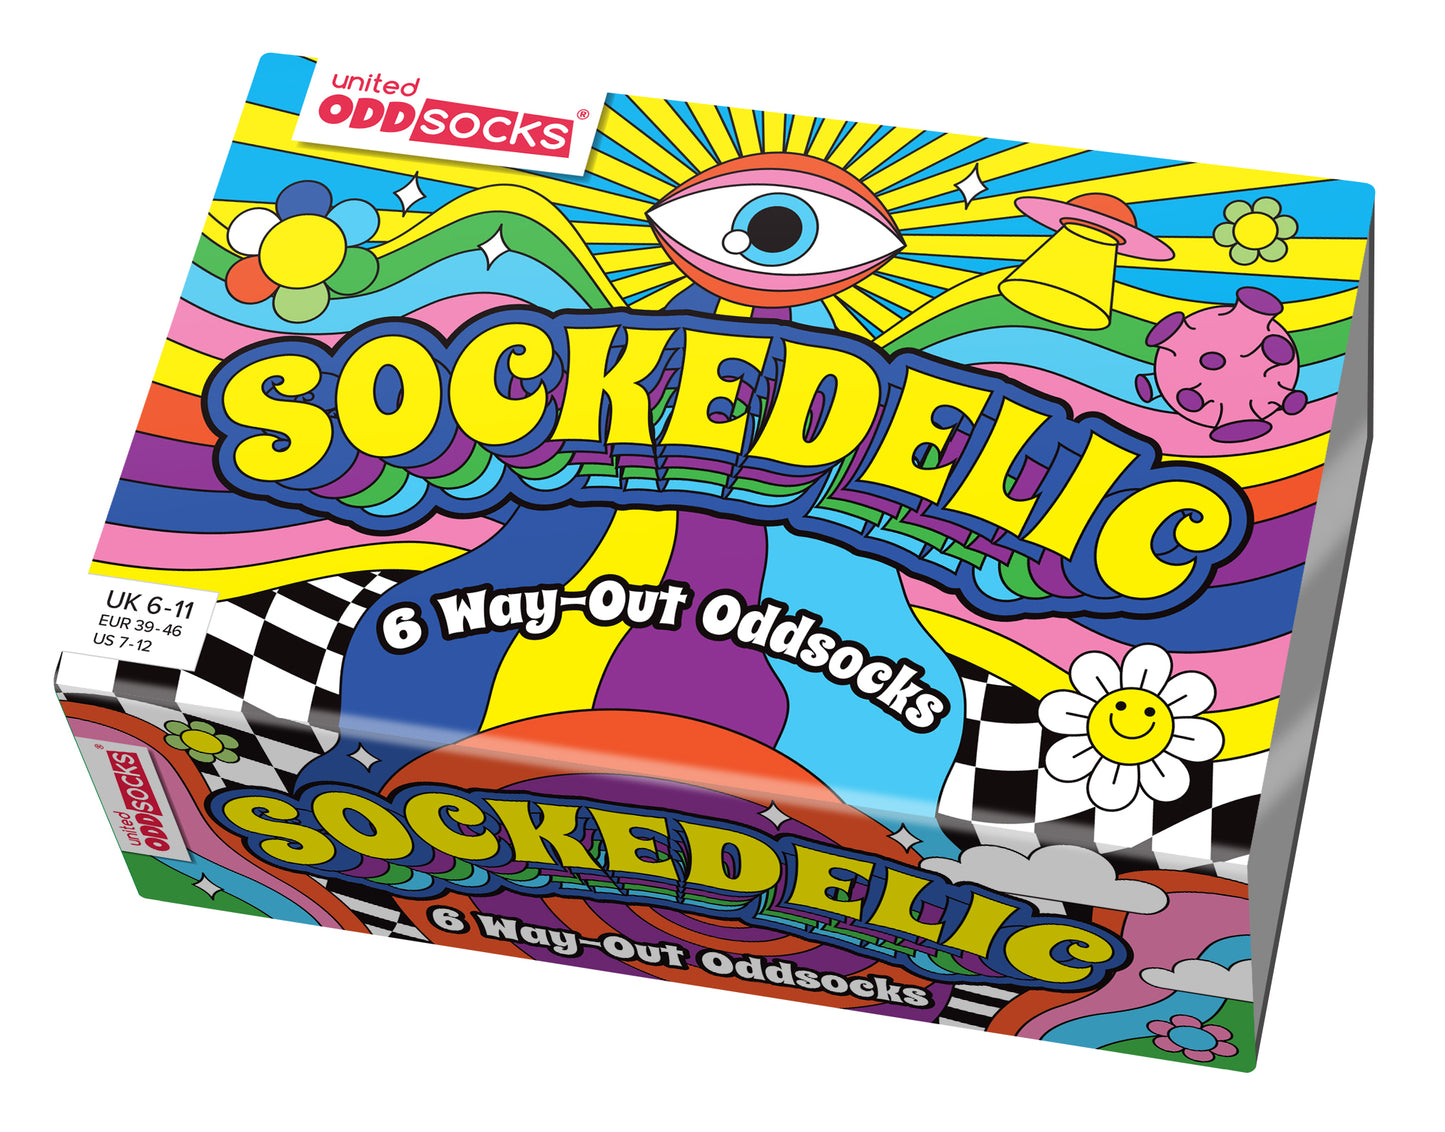 United Oddsocks Sockedelic 6 Odd Socks Gift Box